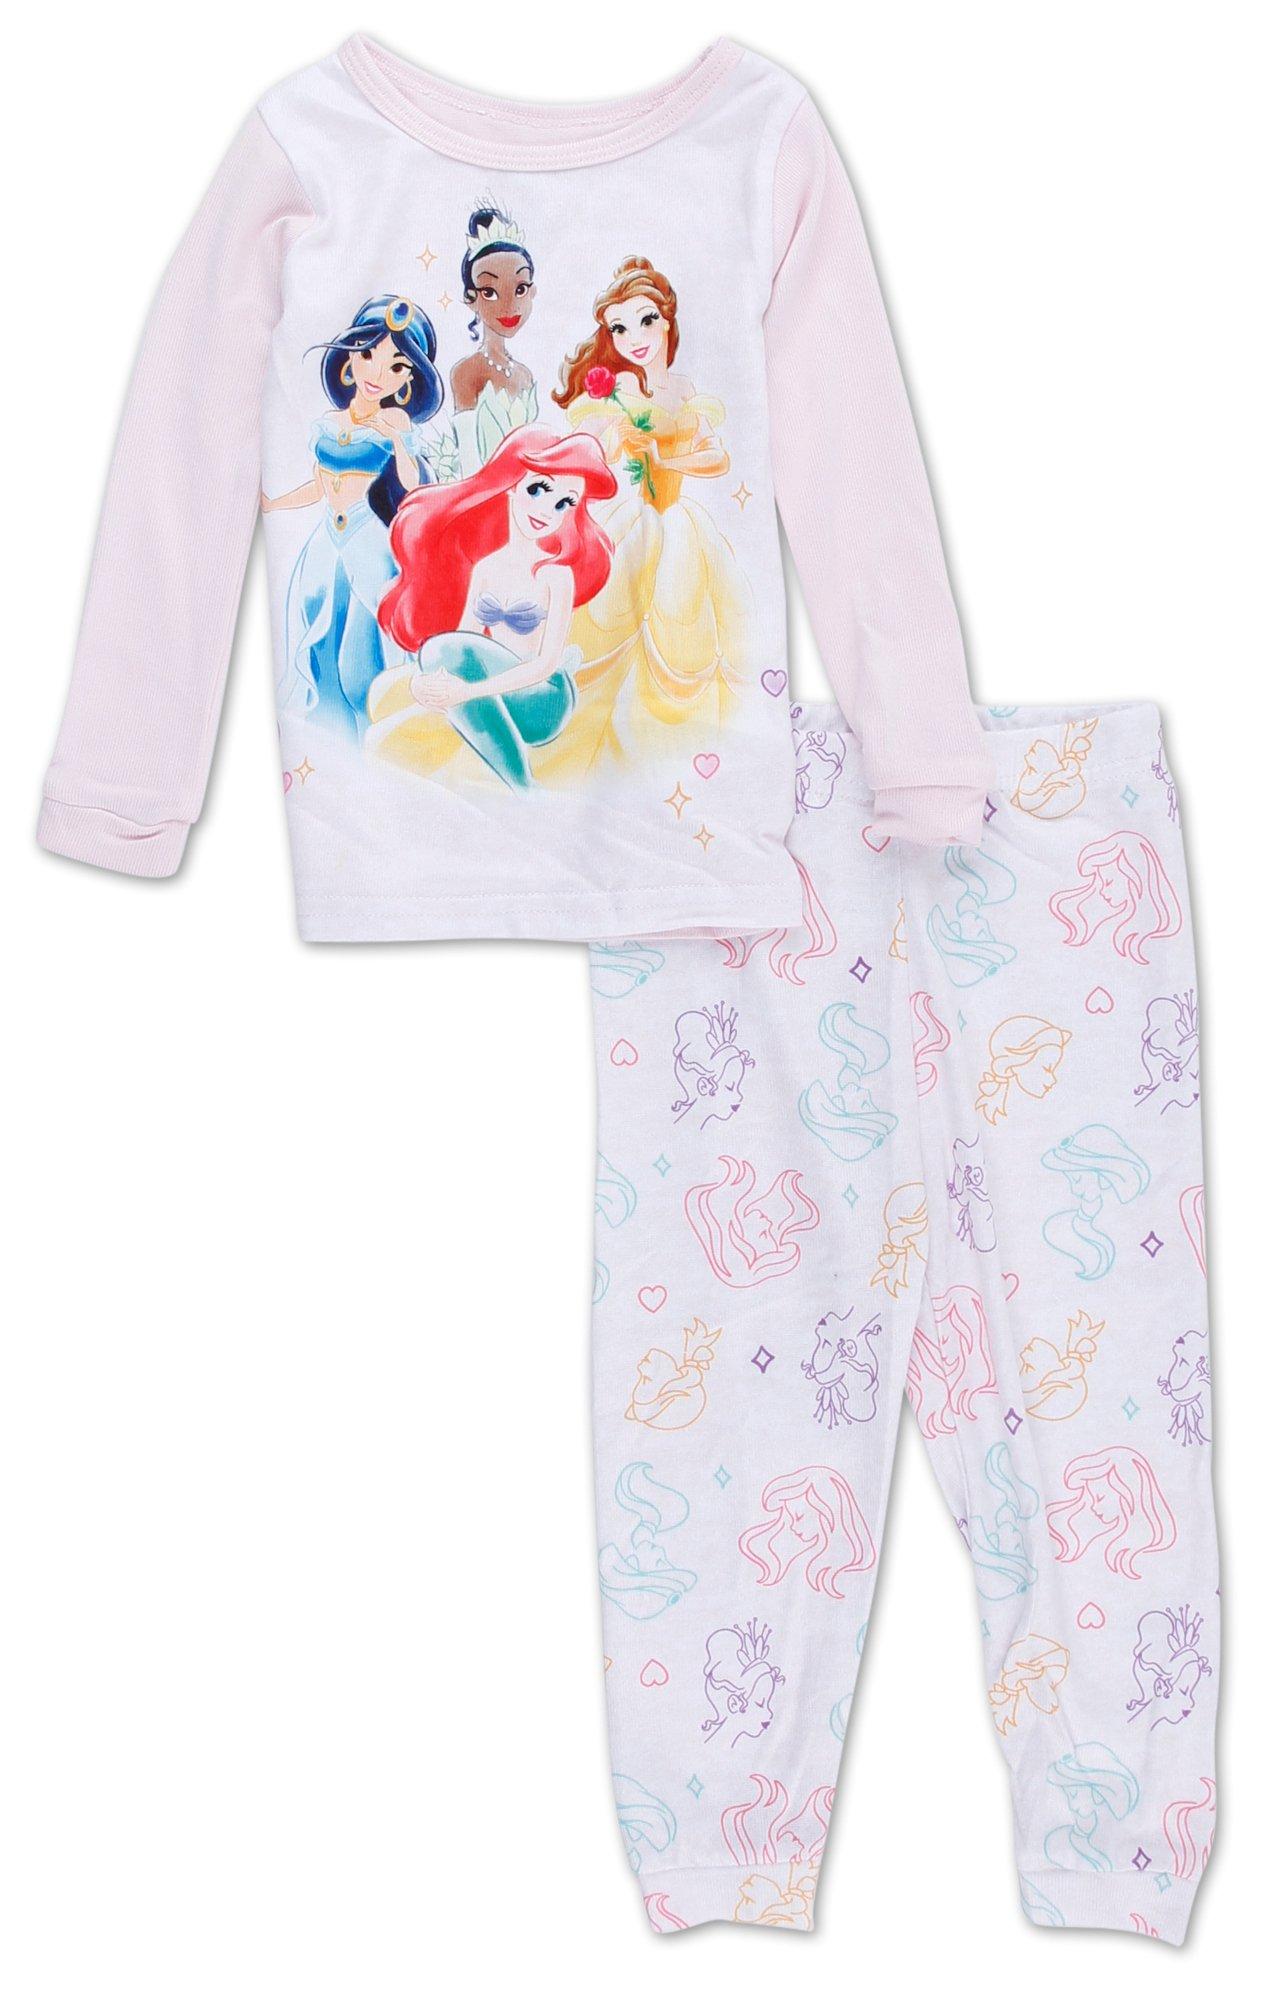 Girls 2 Pc Disney Princess Pajama Set